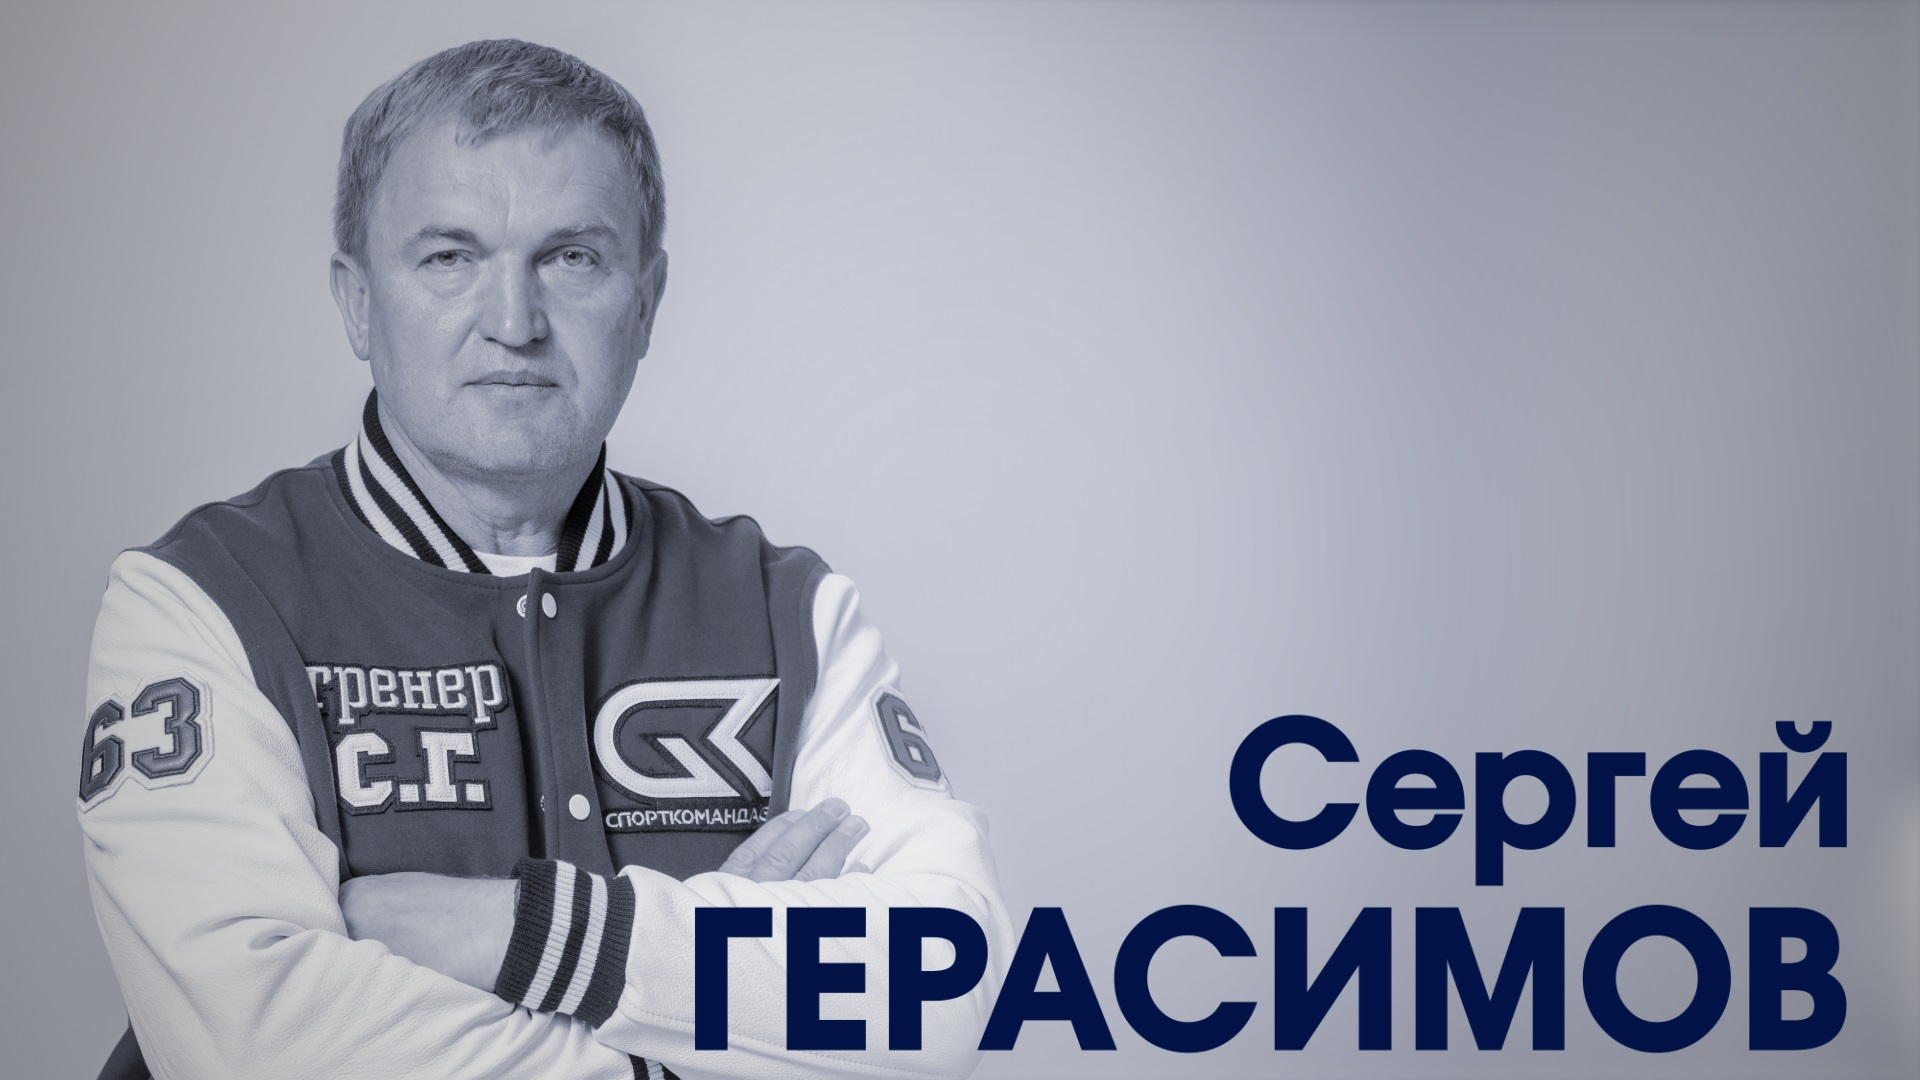 Сергей Герасимов. Заслуженный тренер России по дзюдо